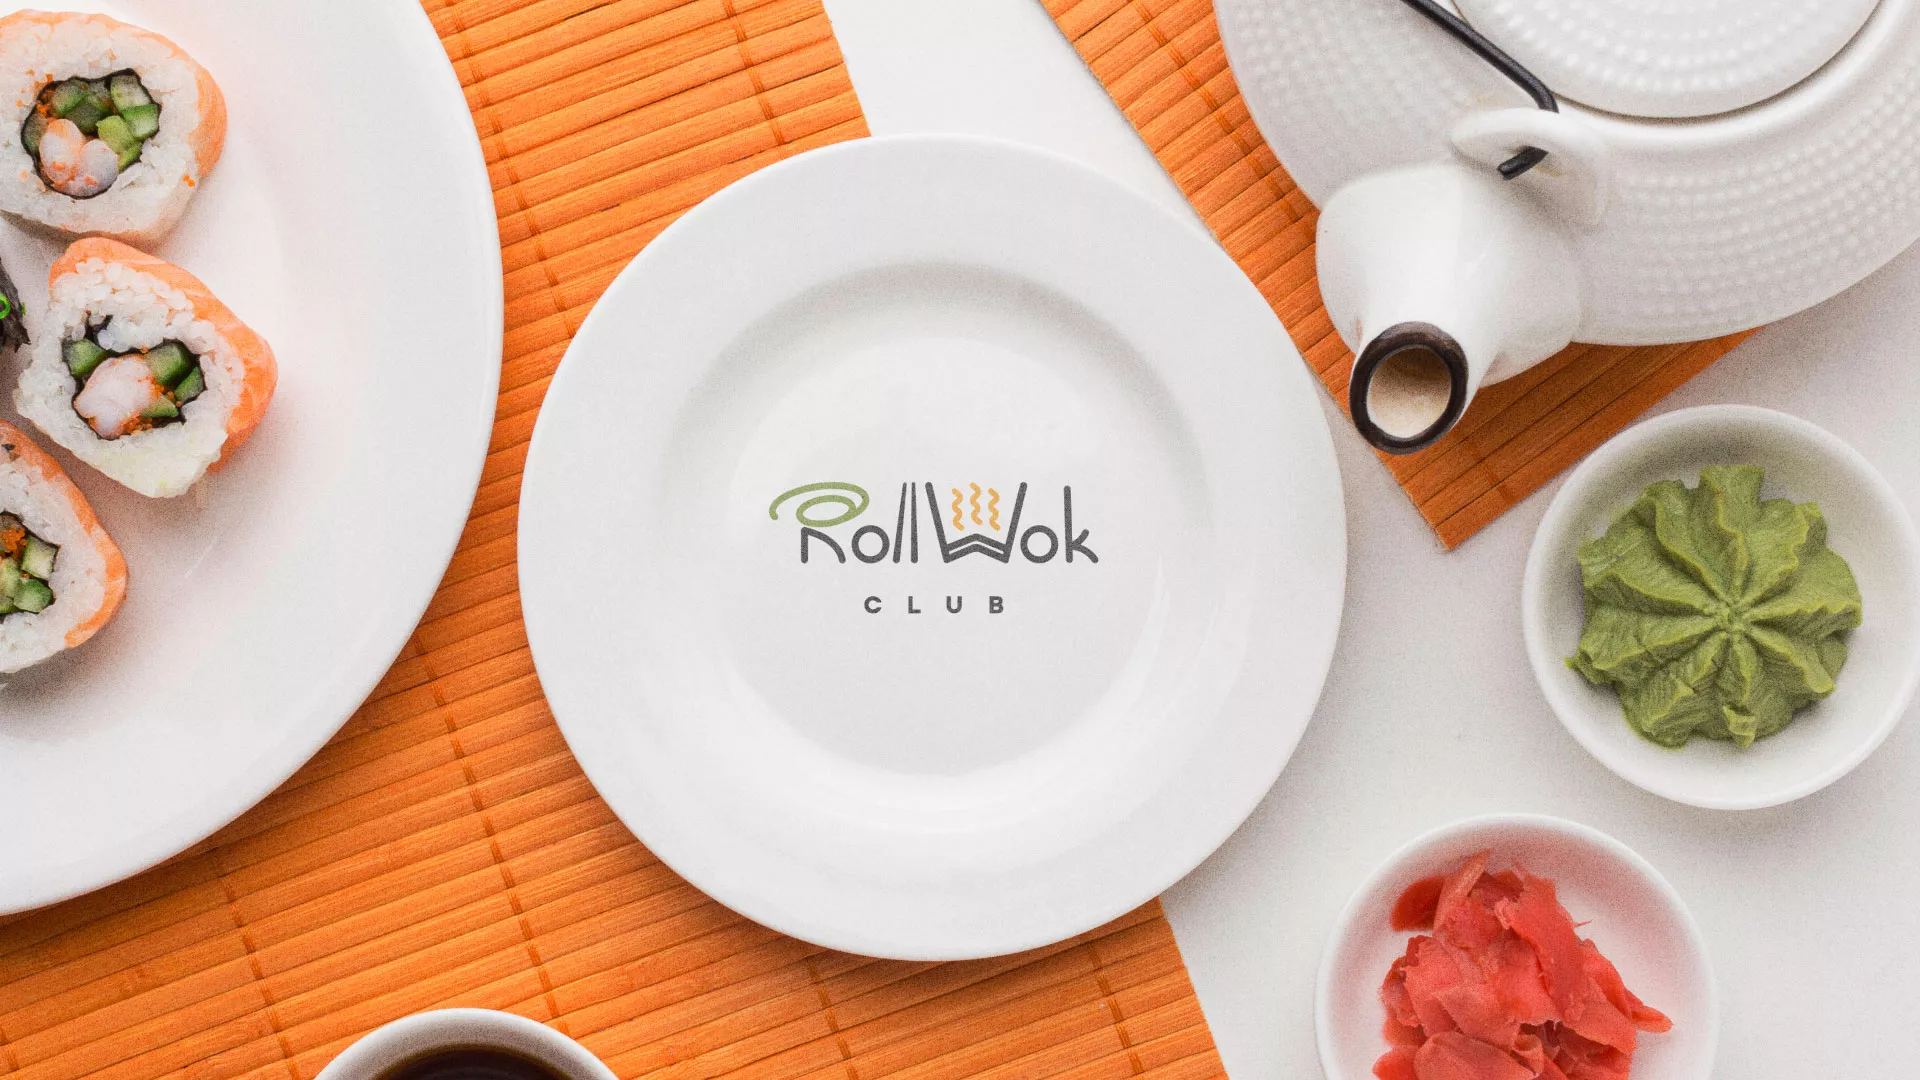 Разработка логотипа и фирменного стиля суши-бара «Roll Wok Club» в Переславле-Залесском